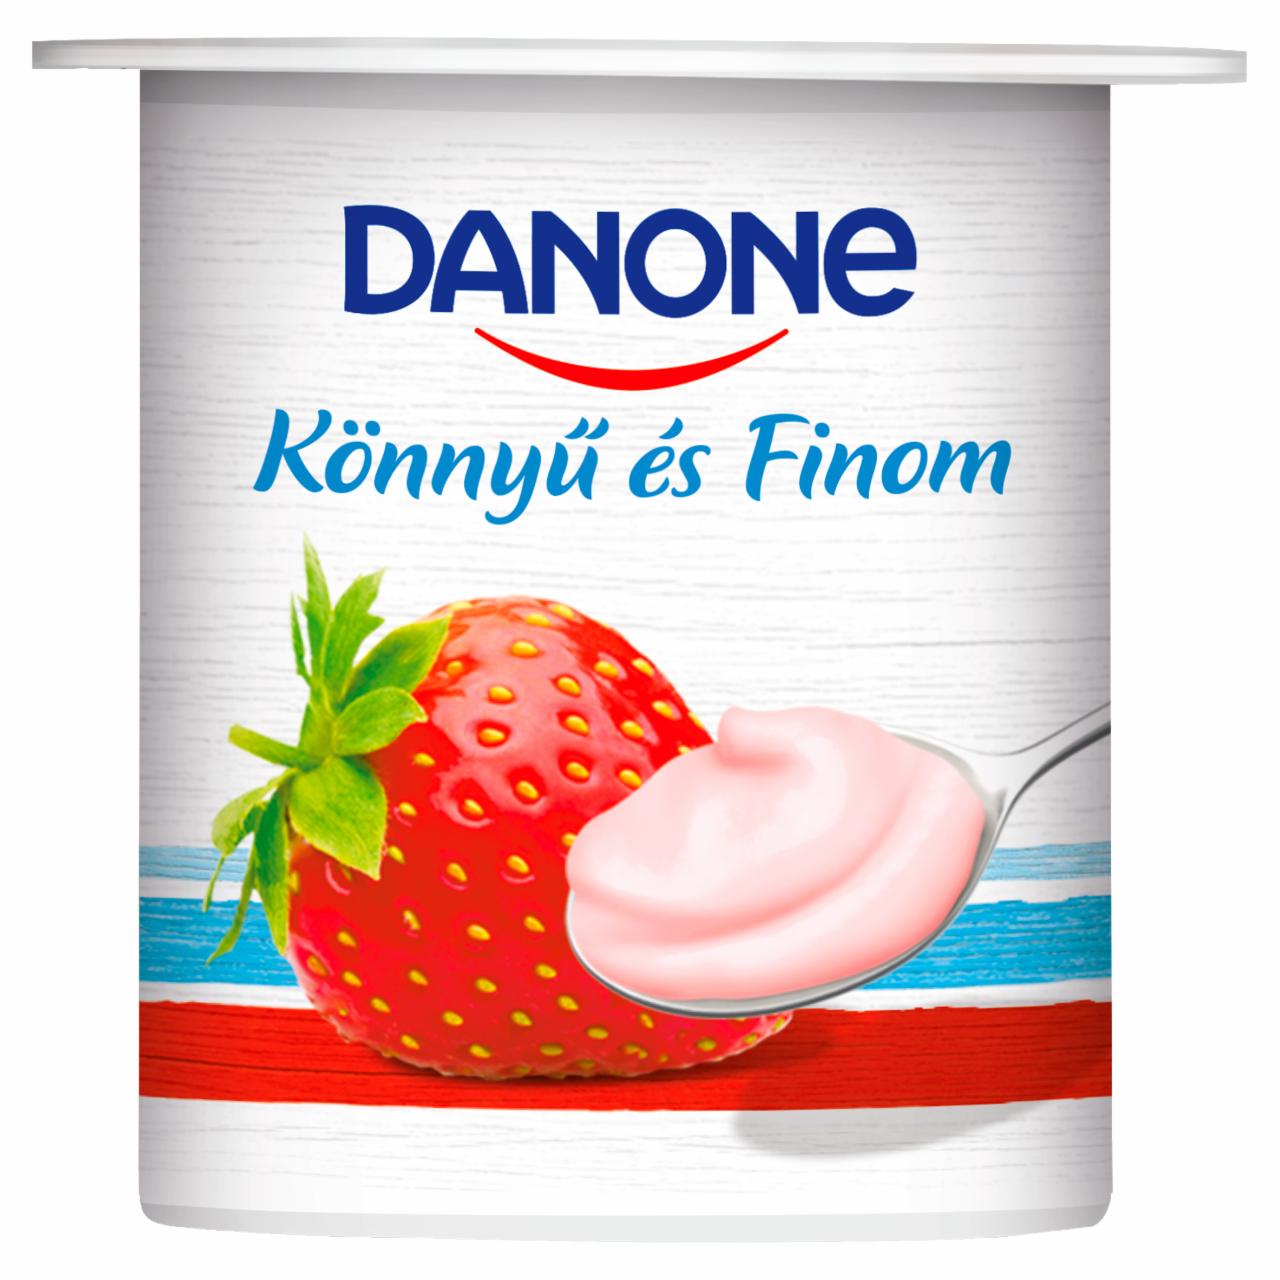 Képek - Danone eperízű, élőflórás, zsírszegény joghurt 125 g